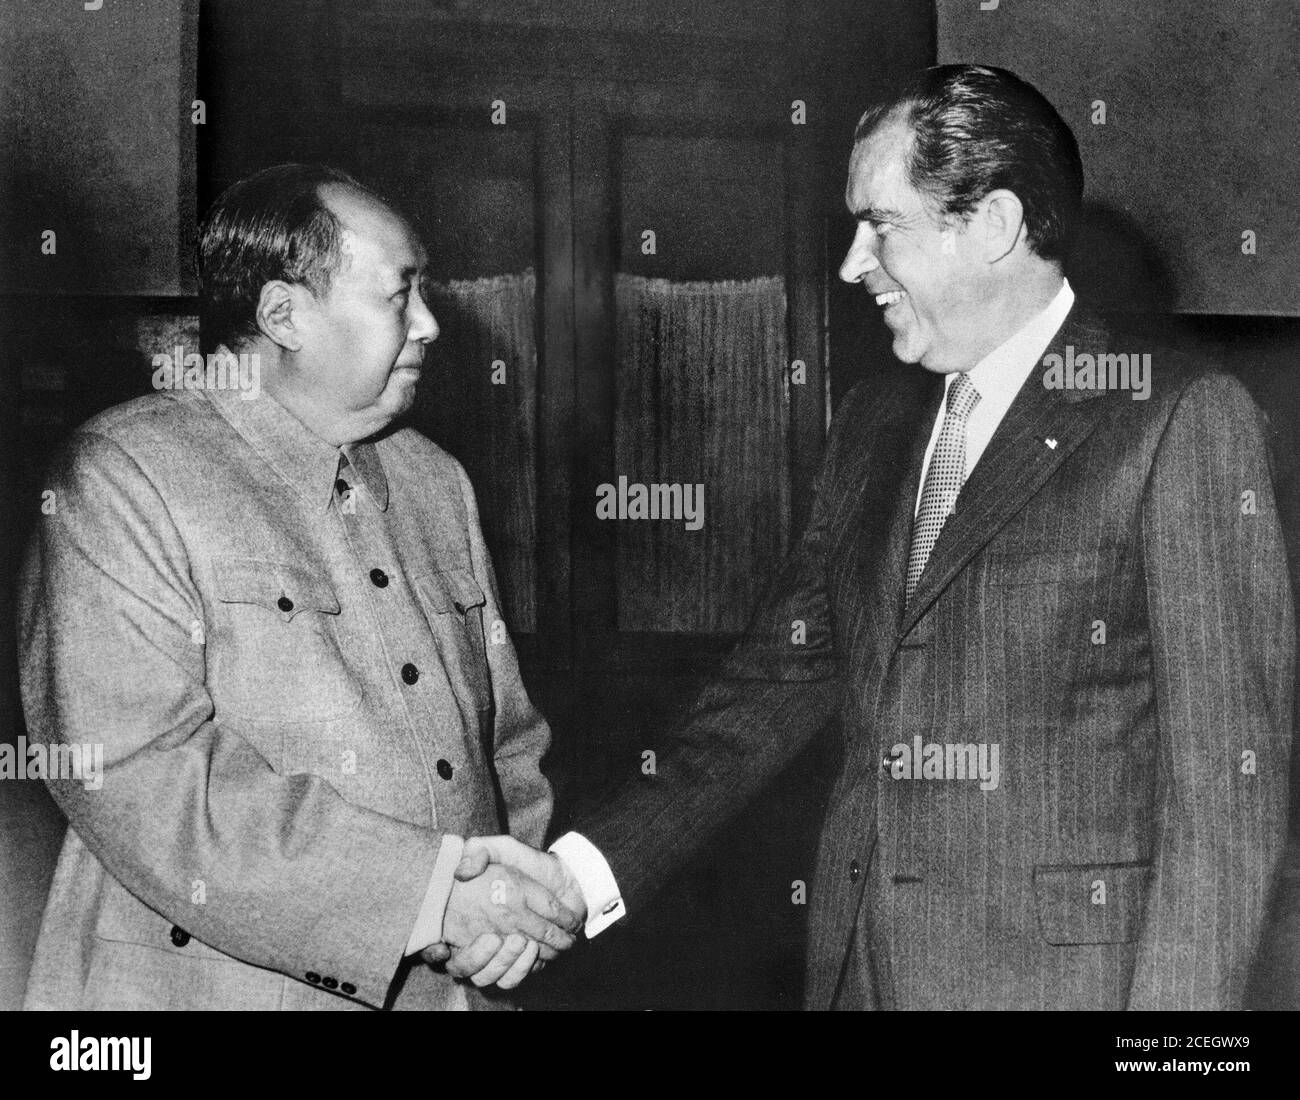 Mao et Nixon. LE président AMÉRICAIN Richard Nixon tremble avec le président du parti communiste chinois Mao Zedong. La photo a été prise lors du voyage historique de Nixon en Chine en 1972. Banque D'Images